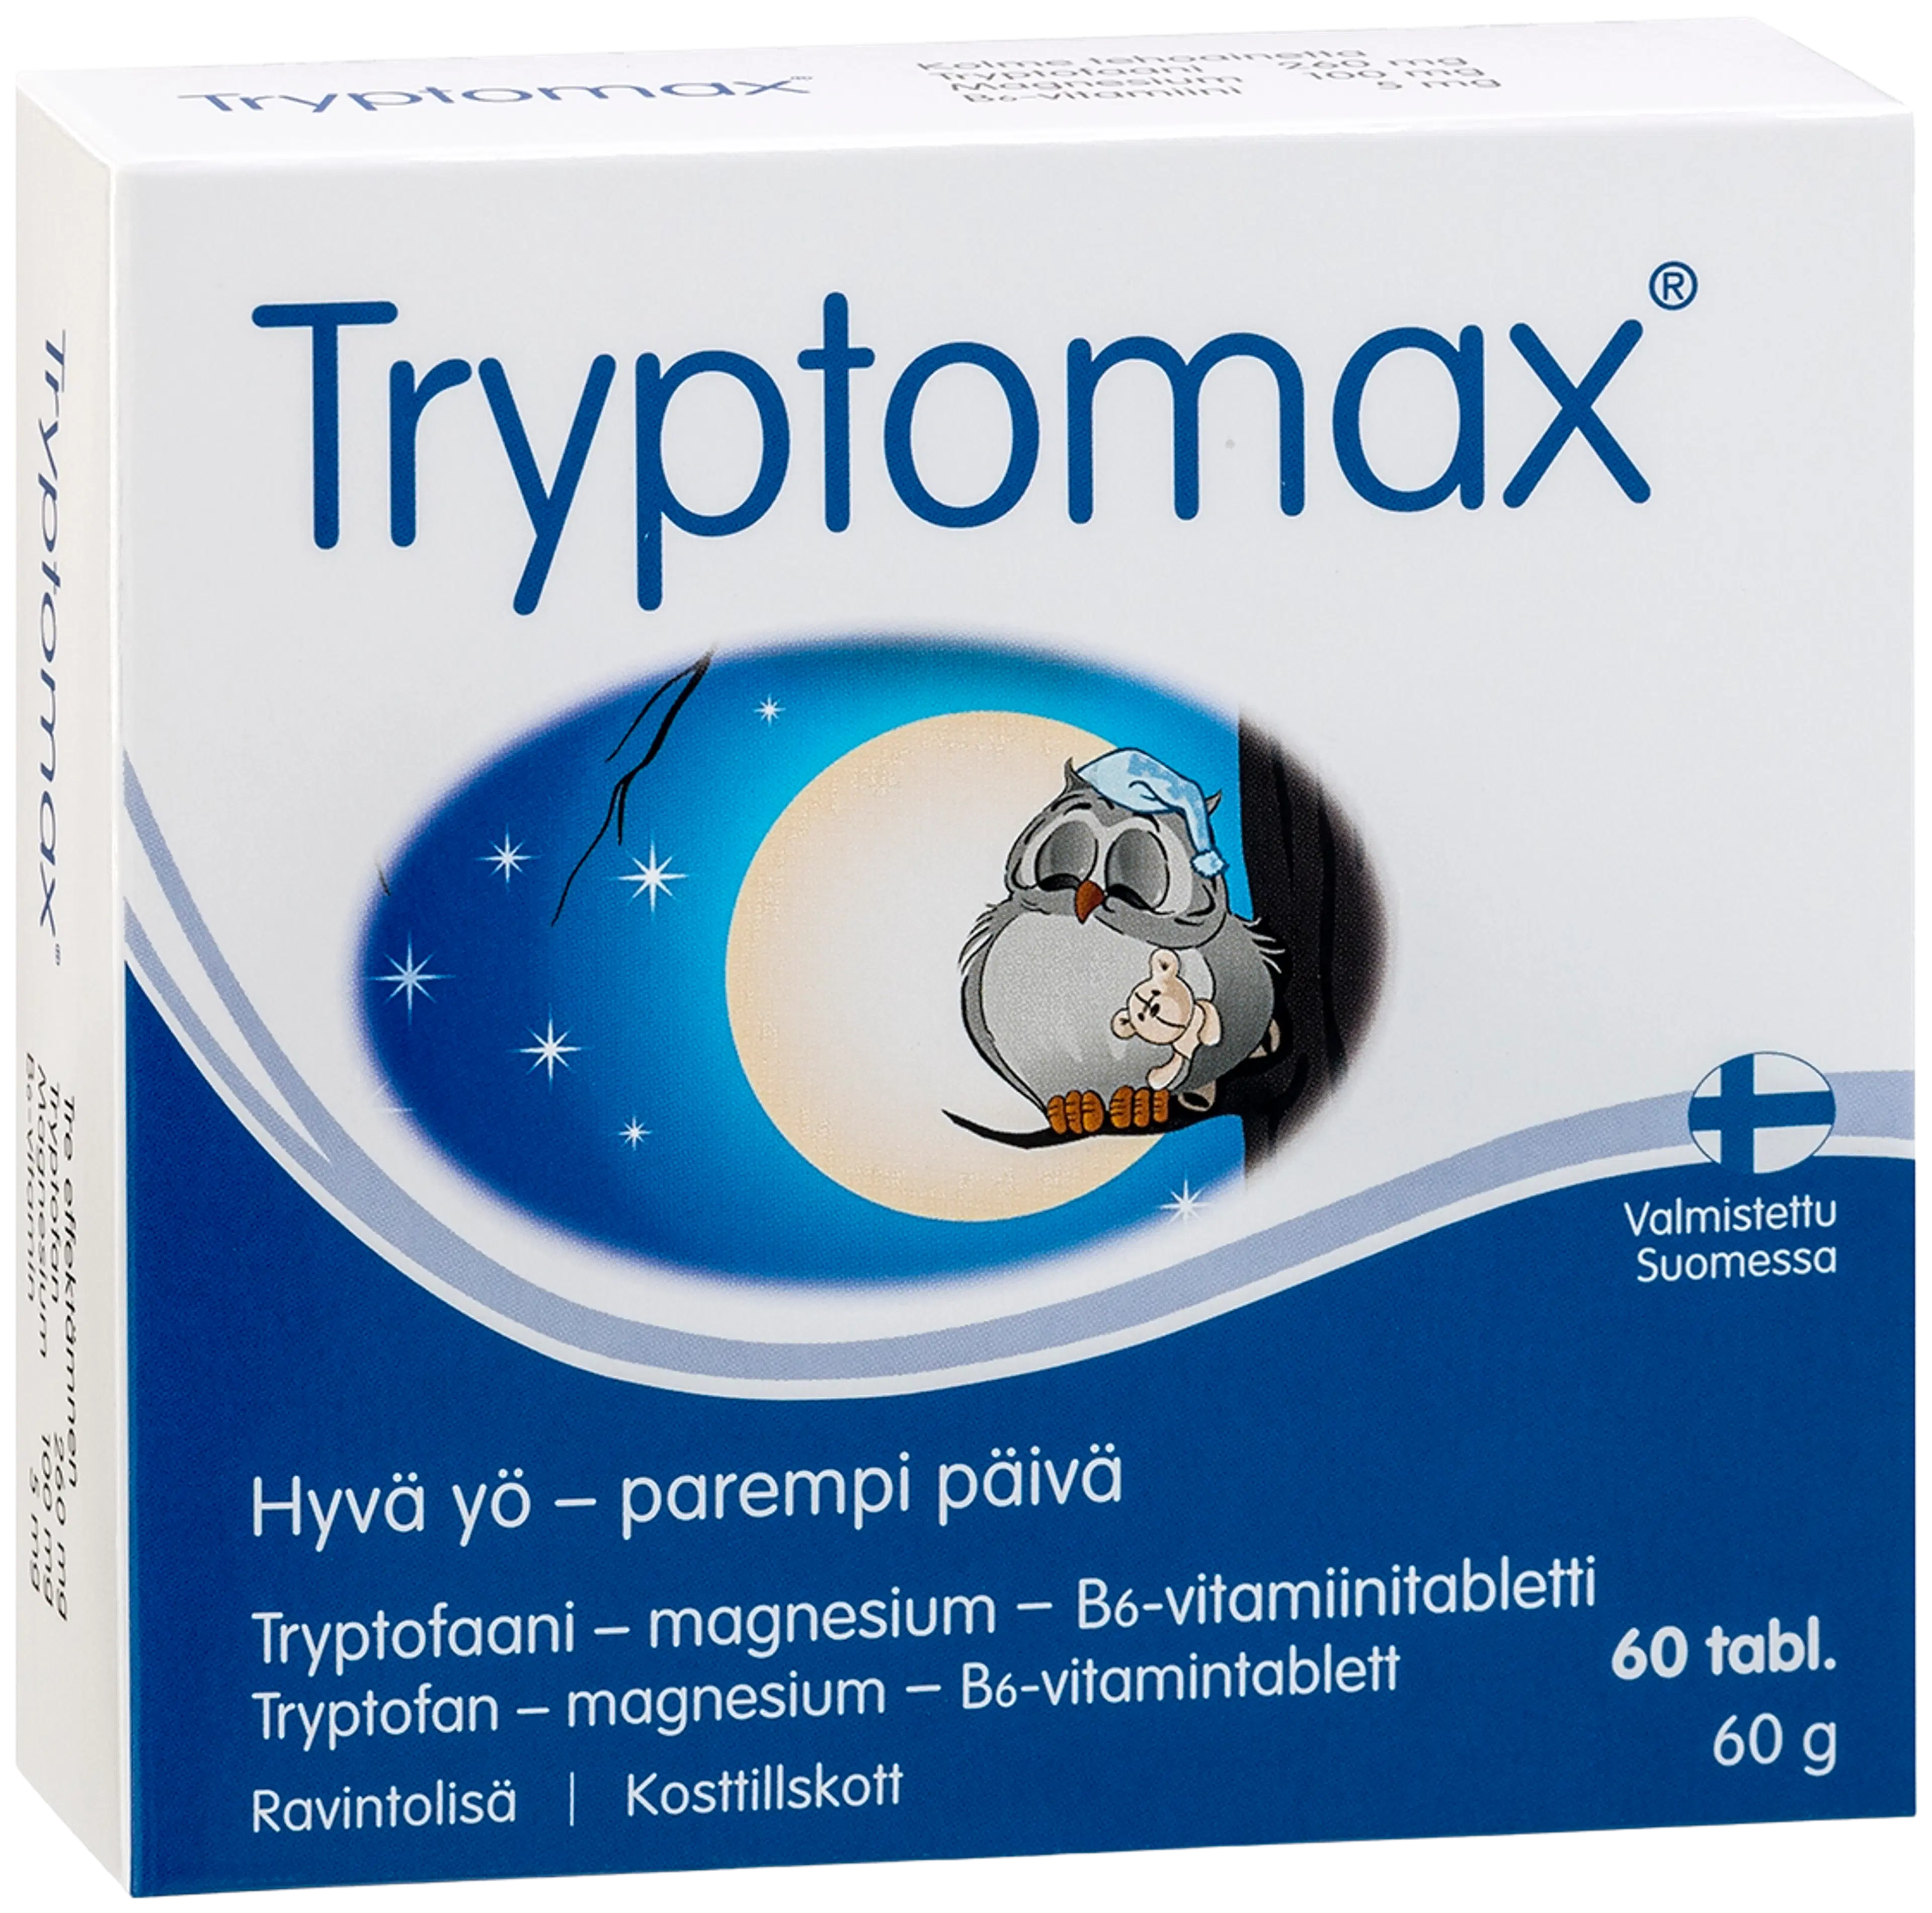 Tryptomax tryptofaanitabletti 60 tabl